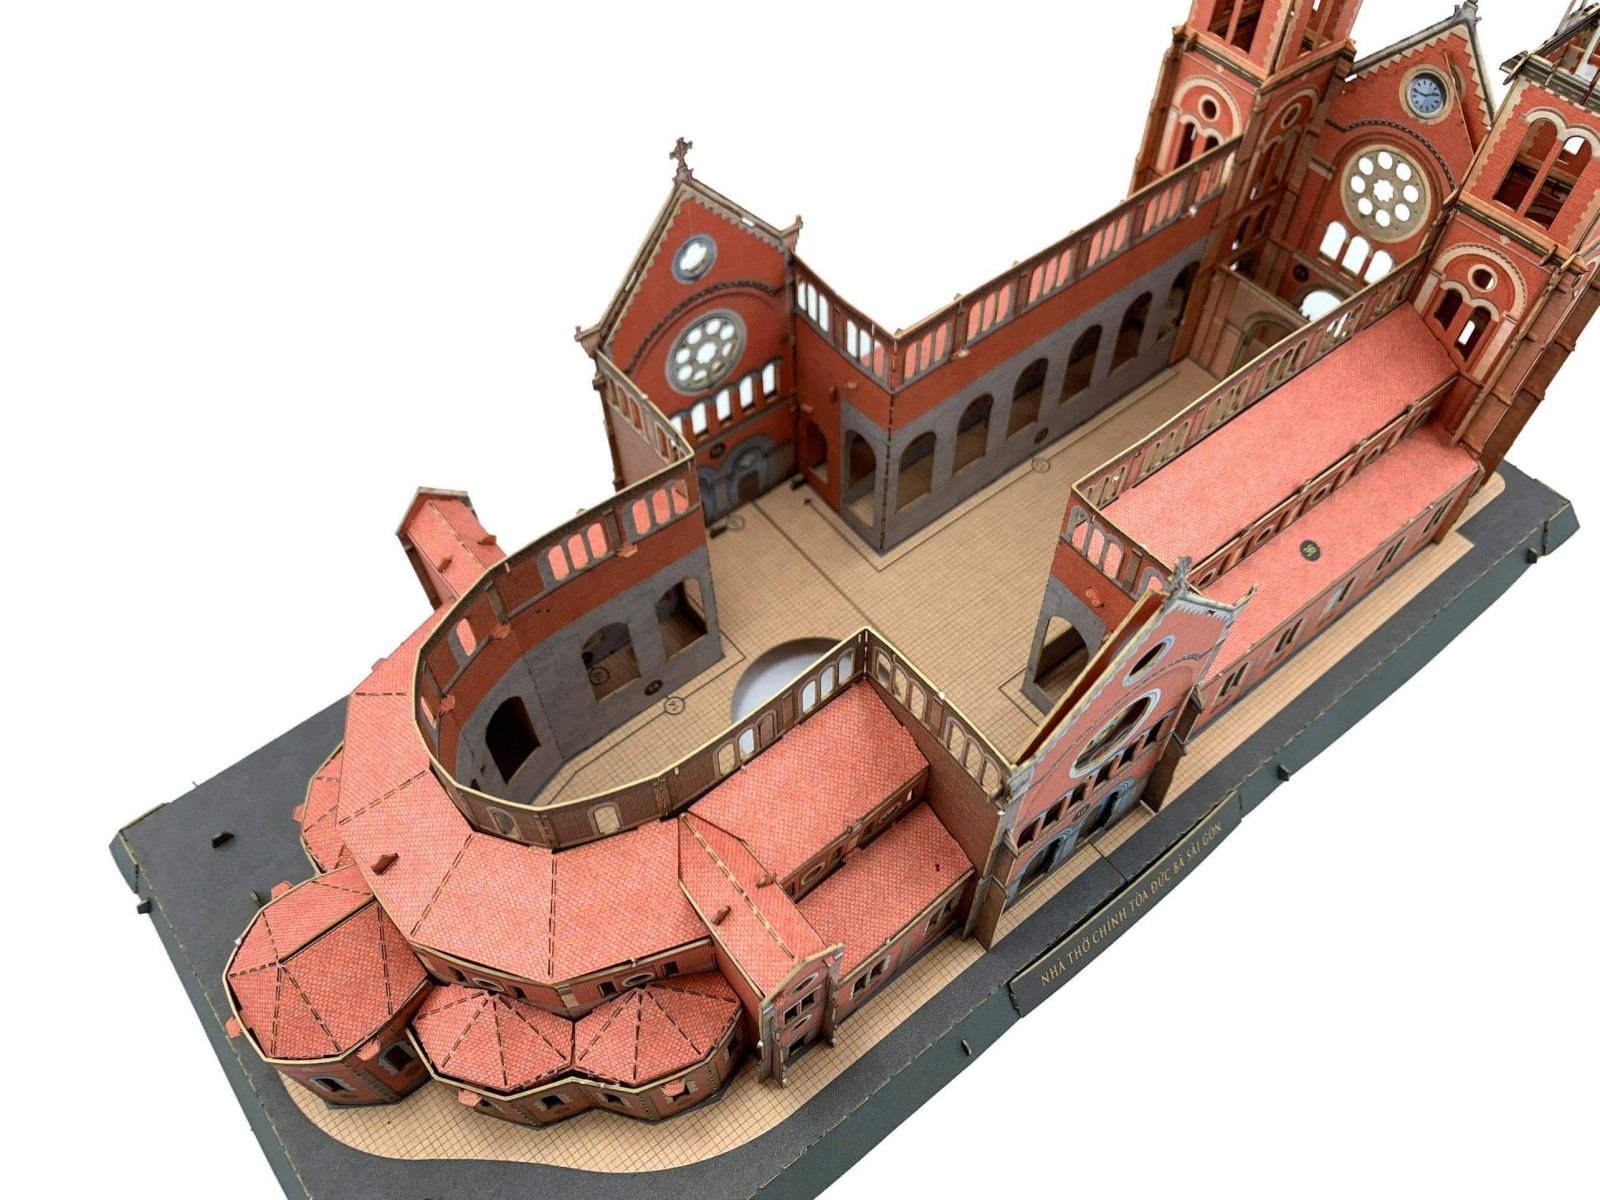 Mô hình 3D Nhà thờ khi gần hoàn thiện, phần trong có thể trang trí thêm phụ kiện, hoặc lắp đèn led chiếu sáng